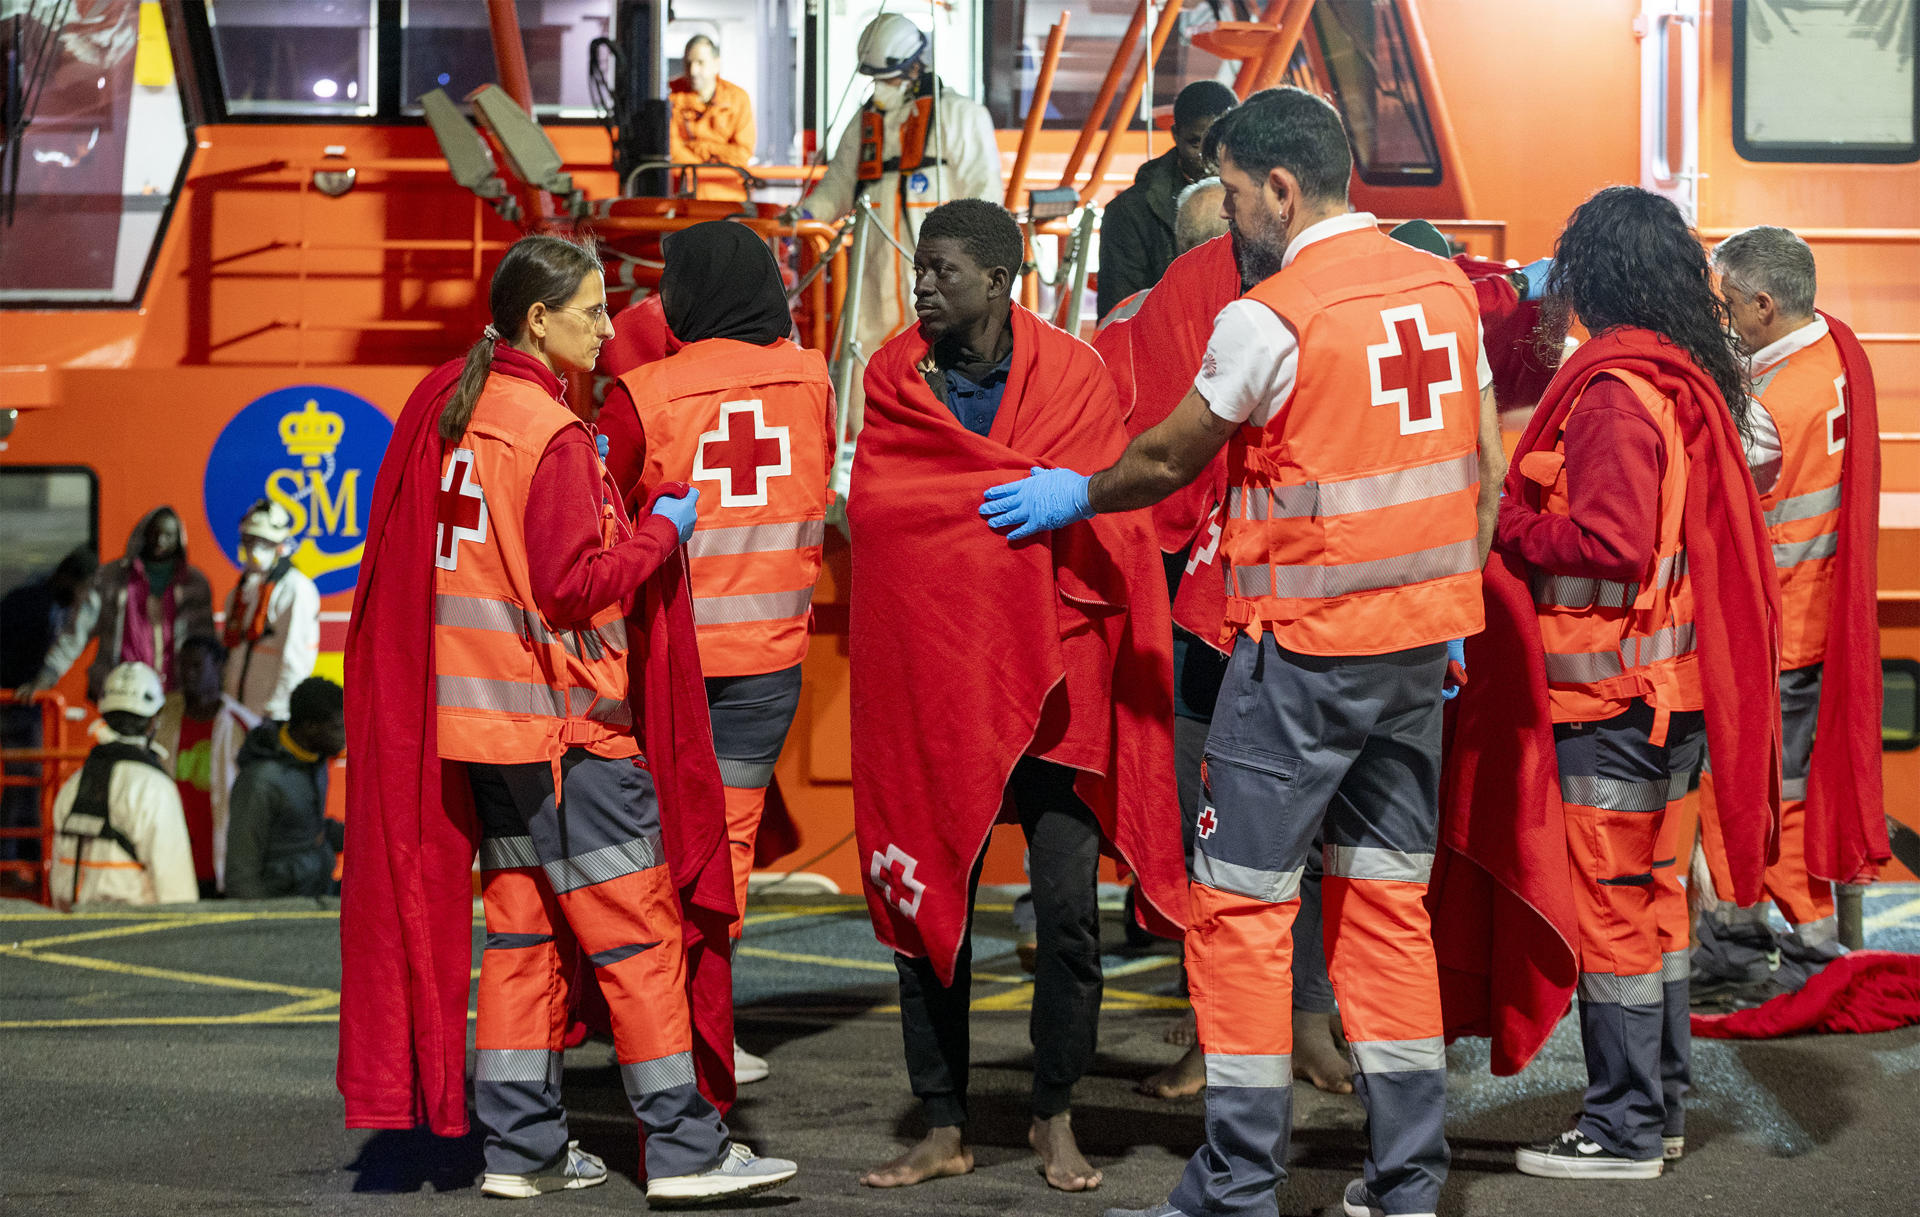 Marruecos rescata a 44 supervivientes y un cadáver en una neumática hundida en el Atlántico tras horas pidiendo auxilio